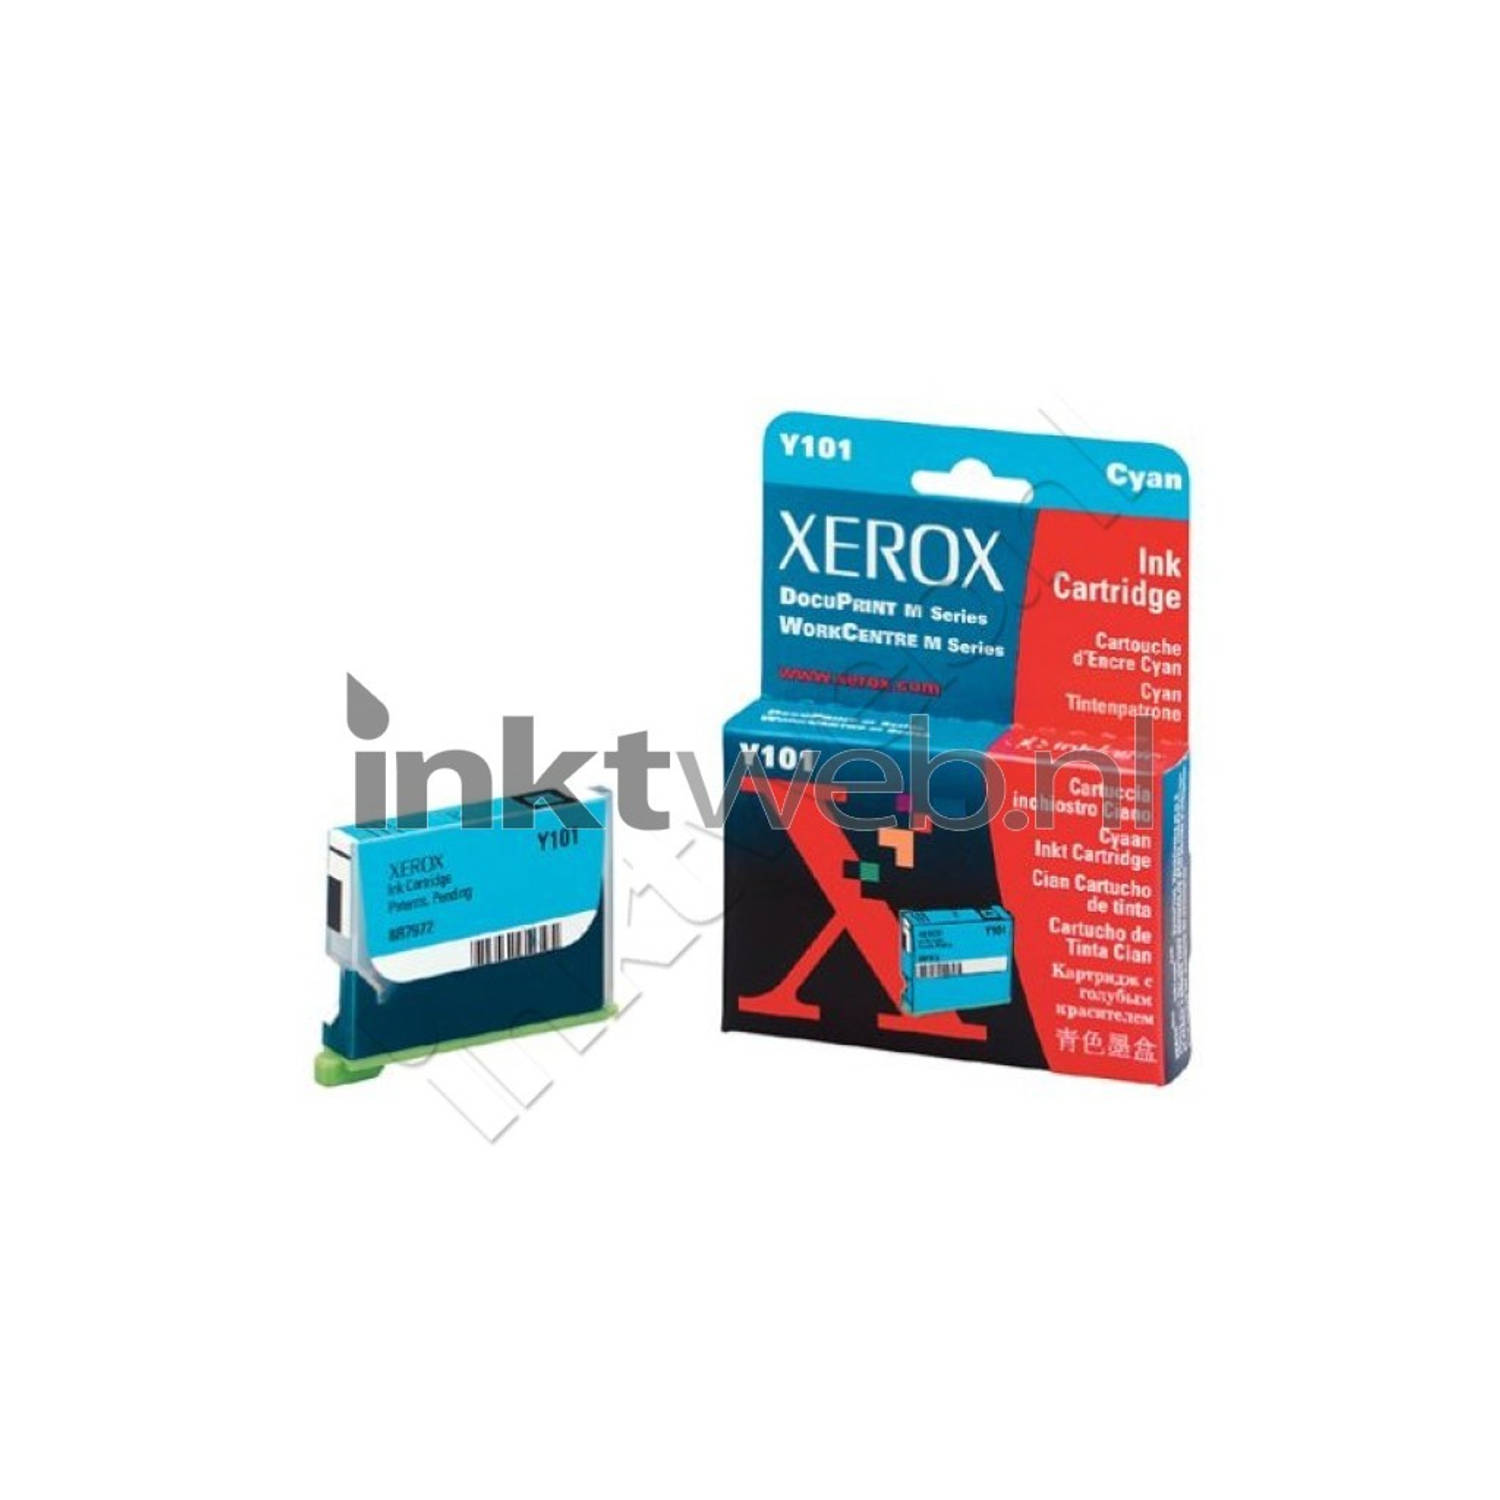 Xerox Y101 cyaan cartridge